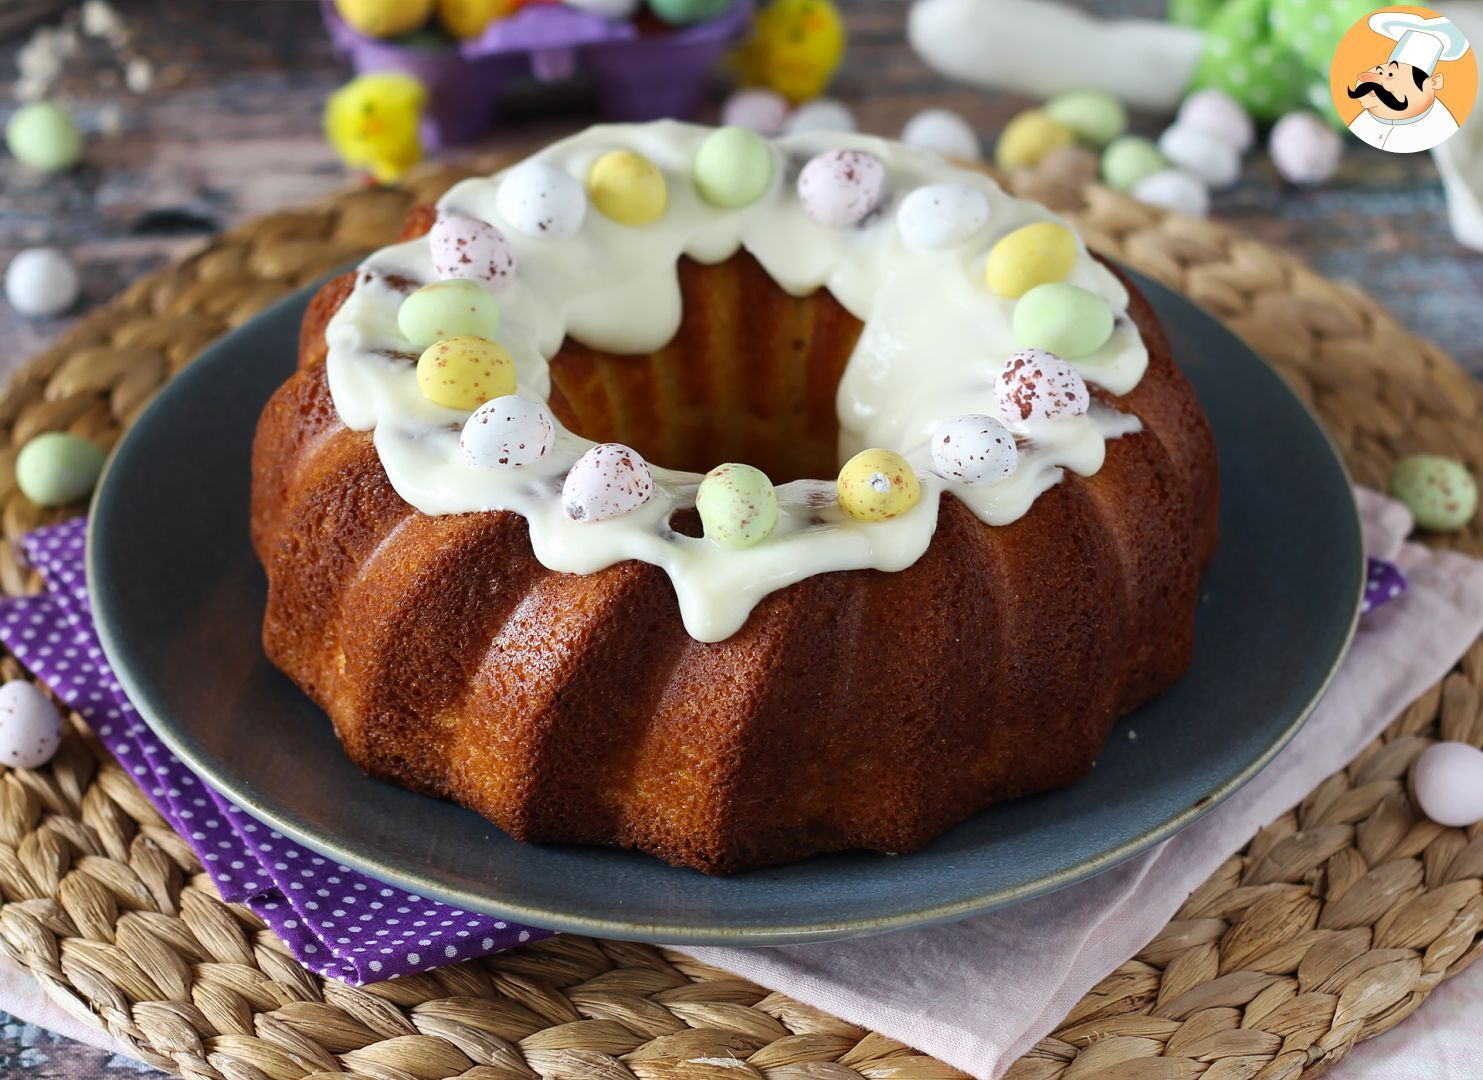 How to Make an Easter Lemon Bundt Cake! - YouTube